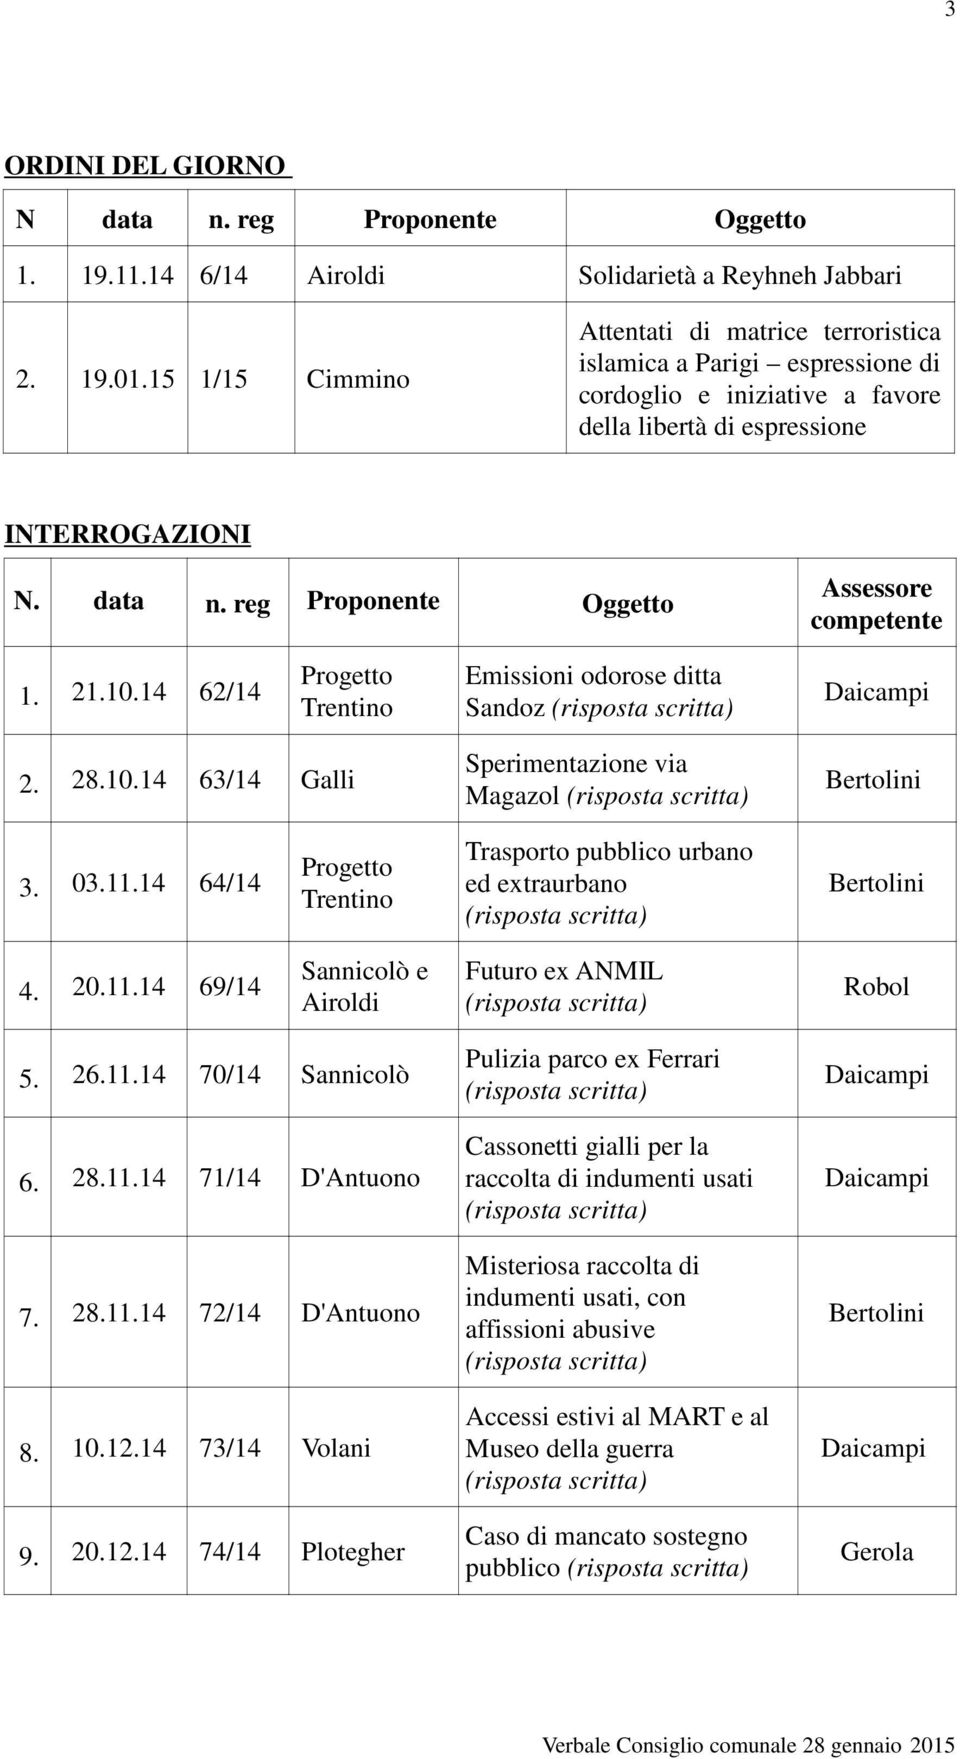 reg Proponente Oggetto Assessore competente 1. 21.10.14 62/14 Progetto Trentino Emissioni odorose ditta Sandoz 2. 28.10.14 63/14 Galli Sperimentazione via Magazol 3. 03.11.